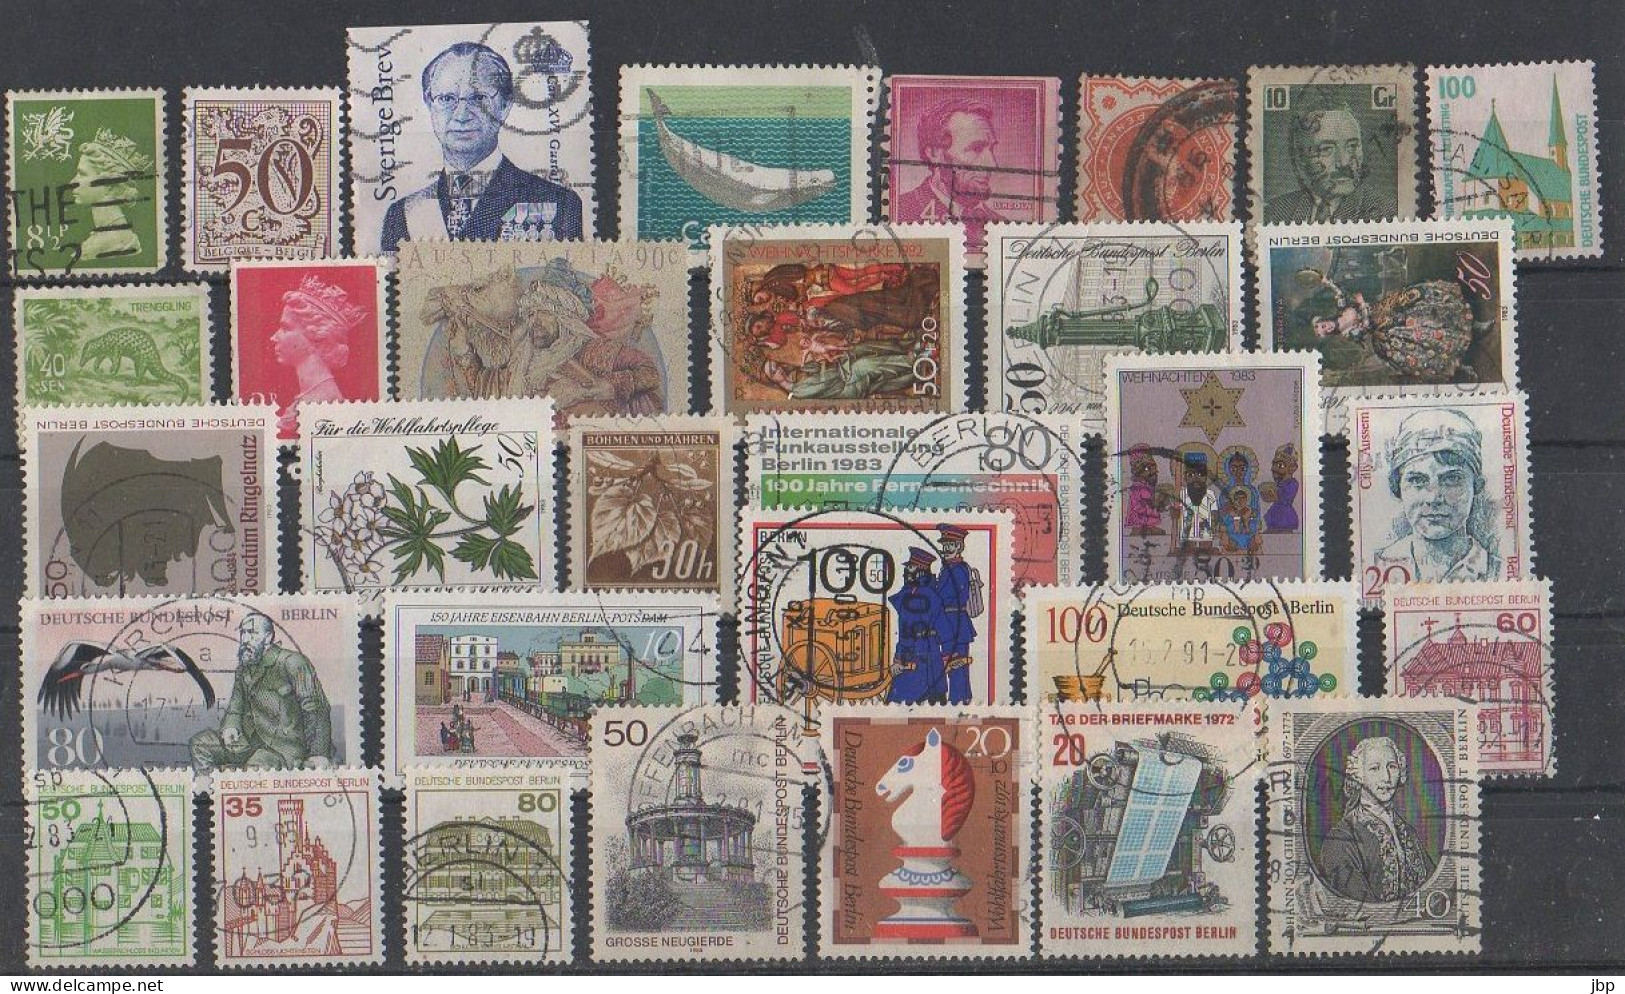 Lot de plus de 200 timbres monde entier toutes époques 7 scans